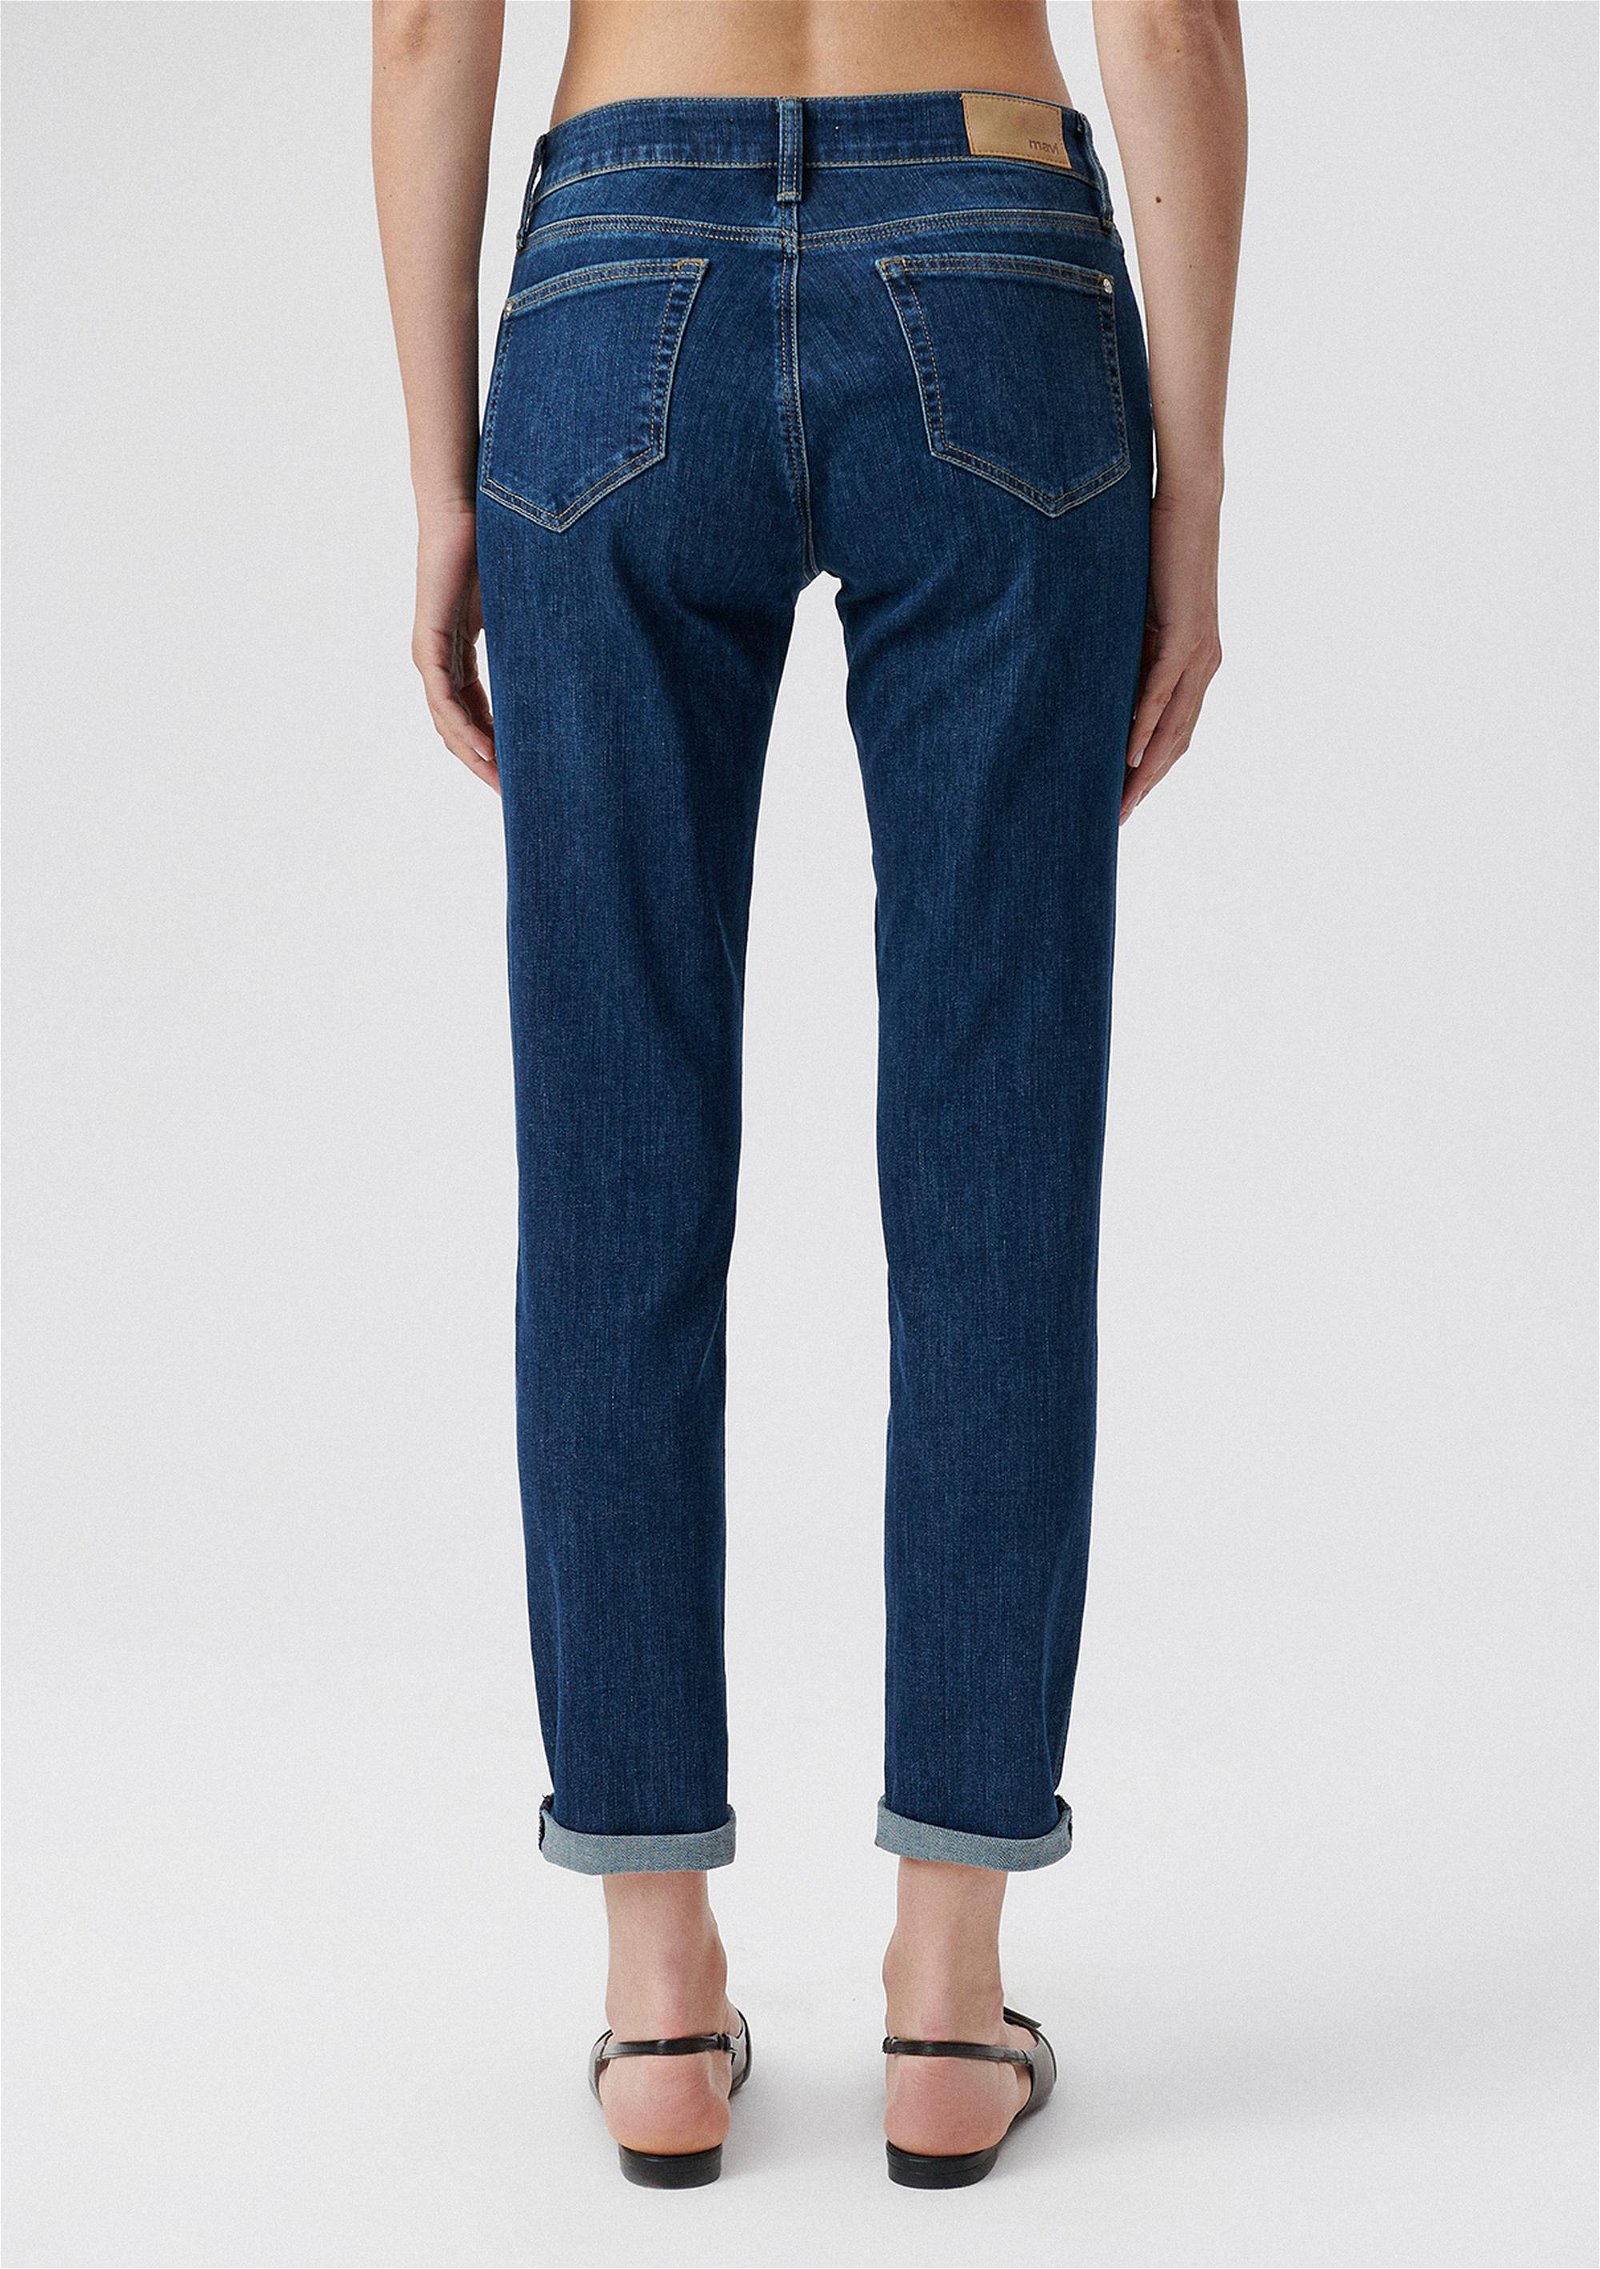 Mavi Ada Koyu Mavi Vintage Jean Pantolon 1020535596